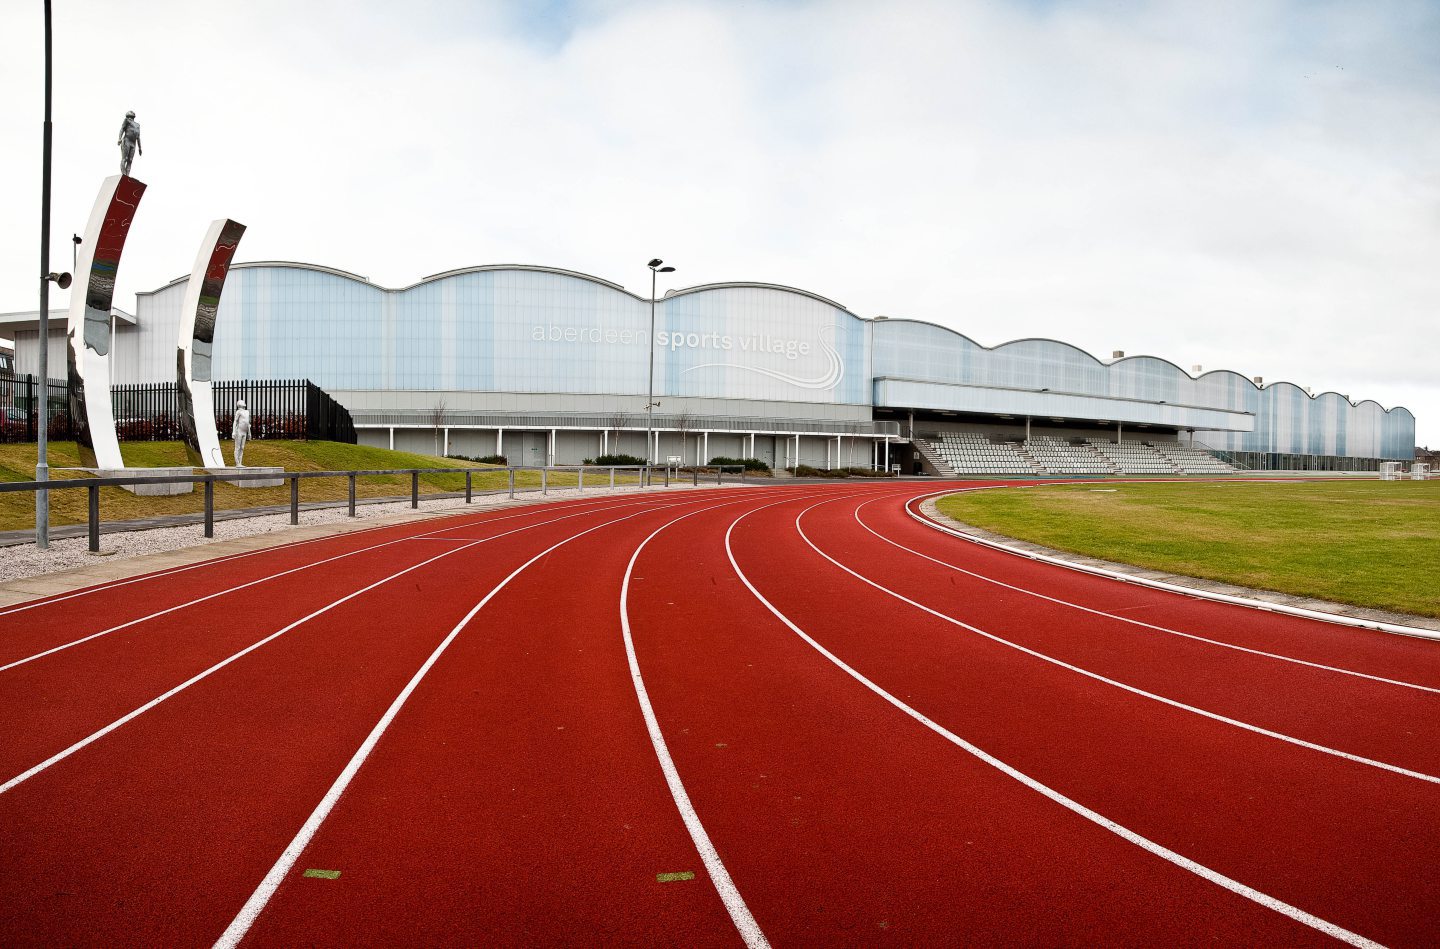 Outdoor running track at Aberdeen Sports Village